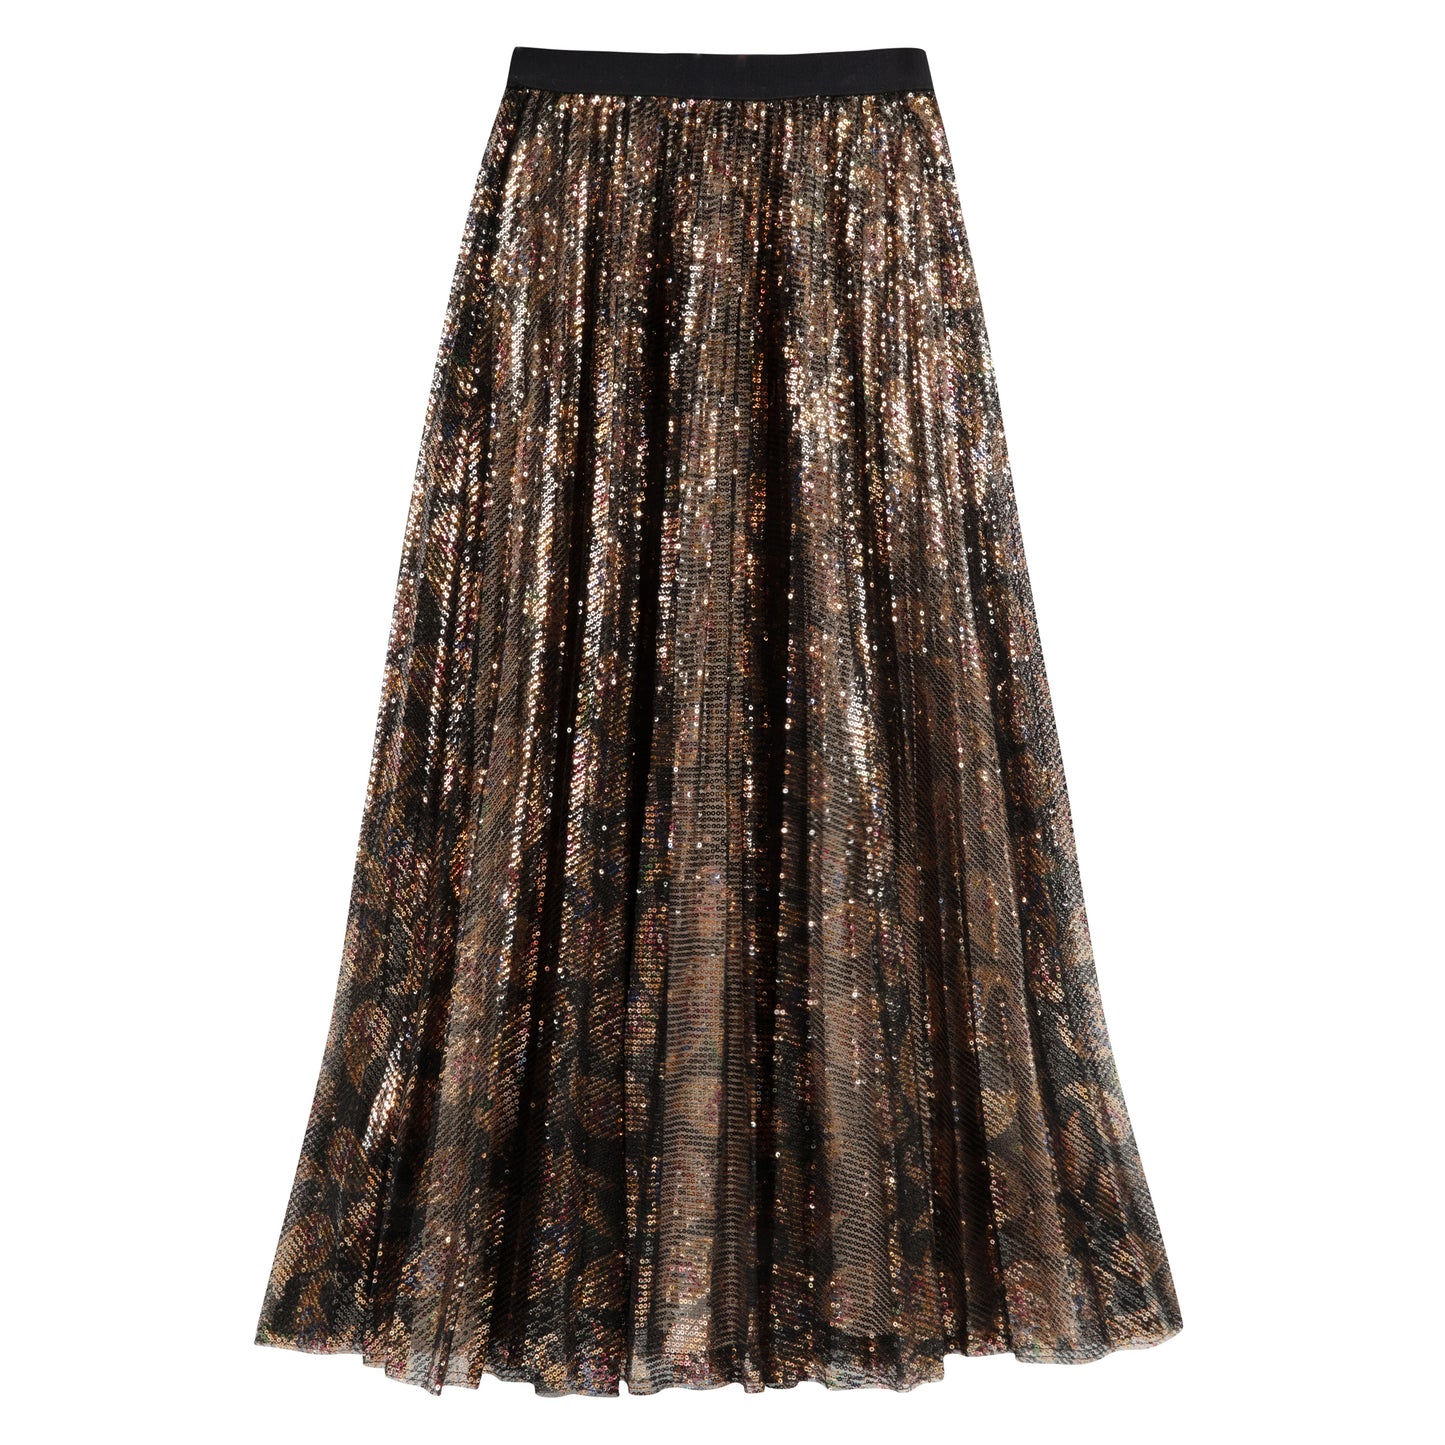 Ella Animal Print Sequin Skirt metallic skirt animal print skirt midi skit eleven loves ellen loves 11loves sustainable 